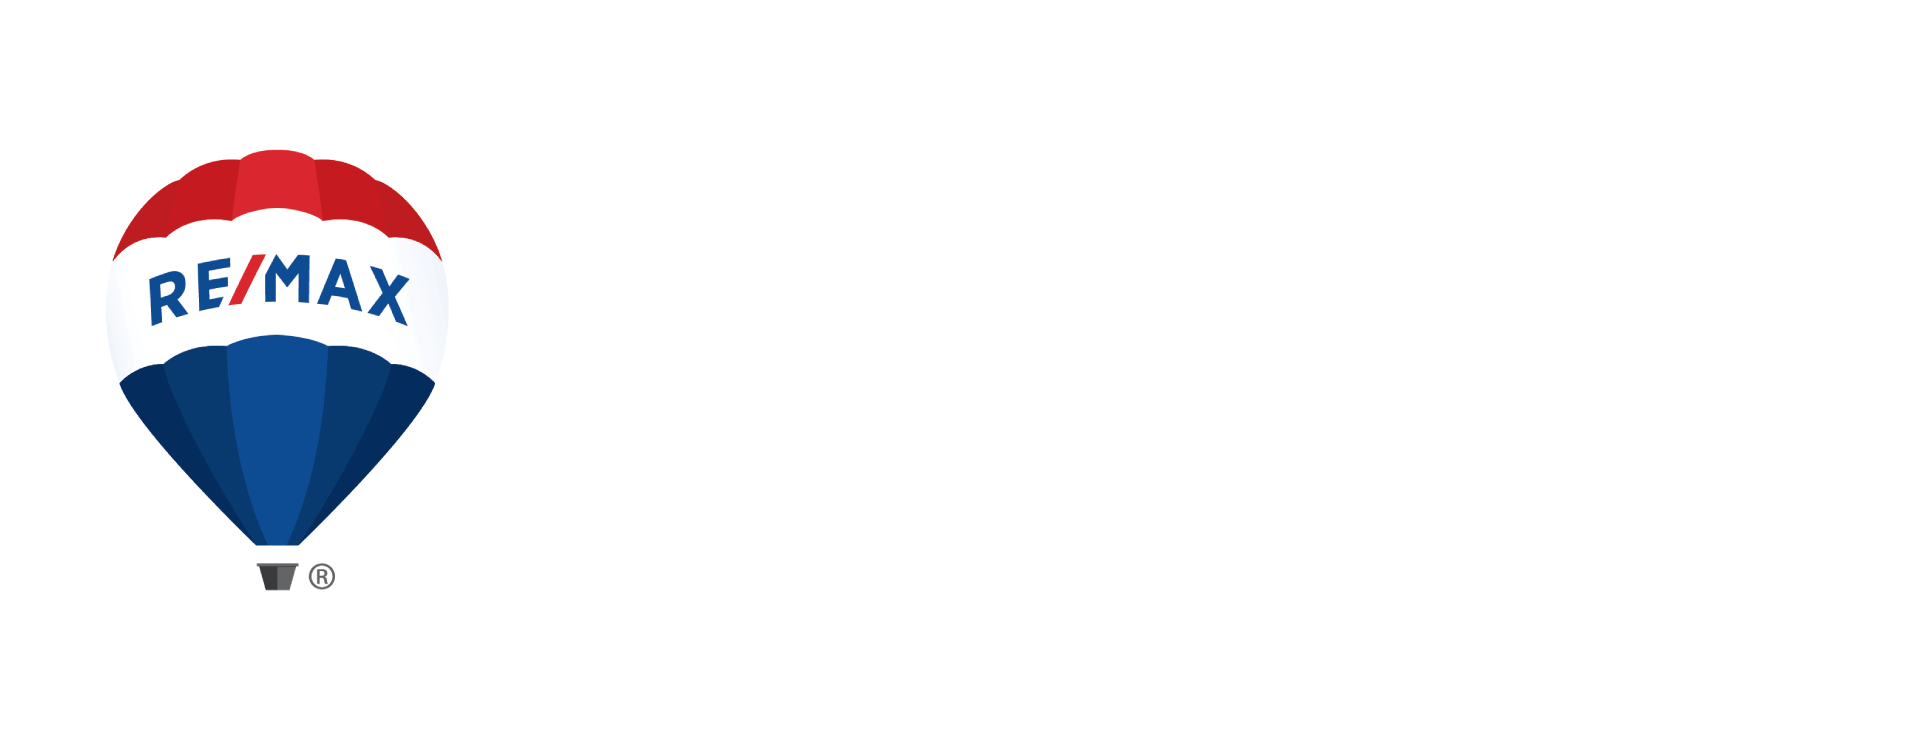 ReMax-Alliance_white